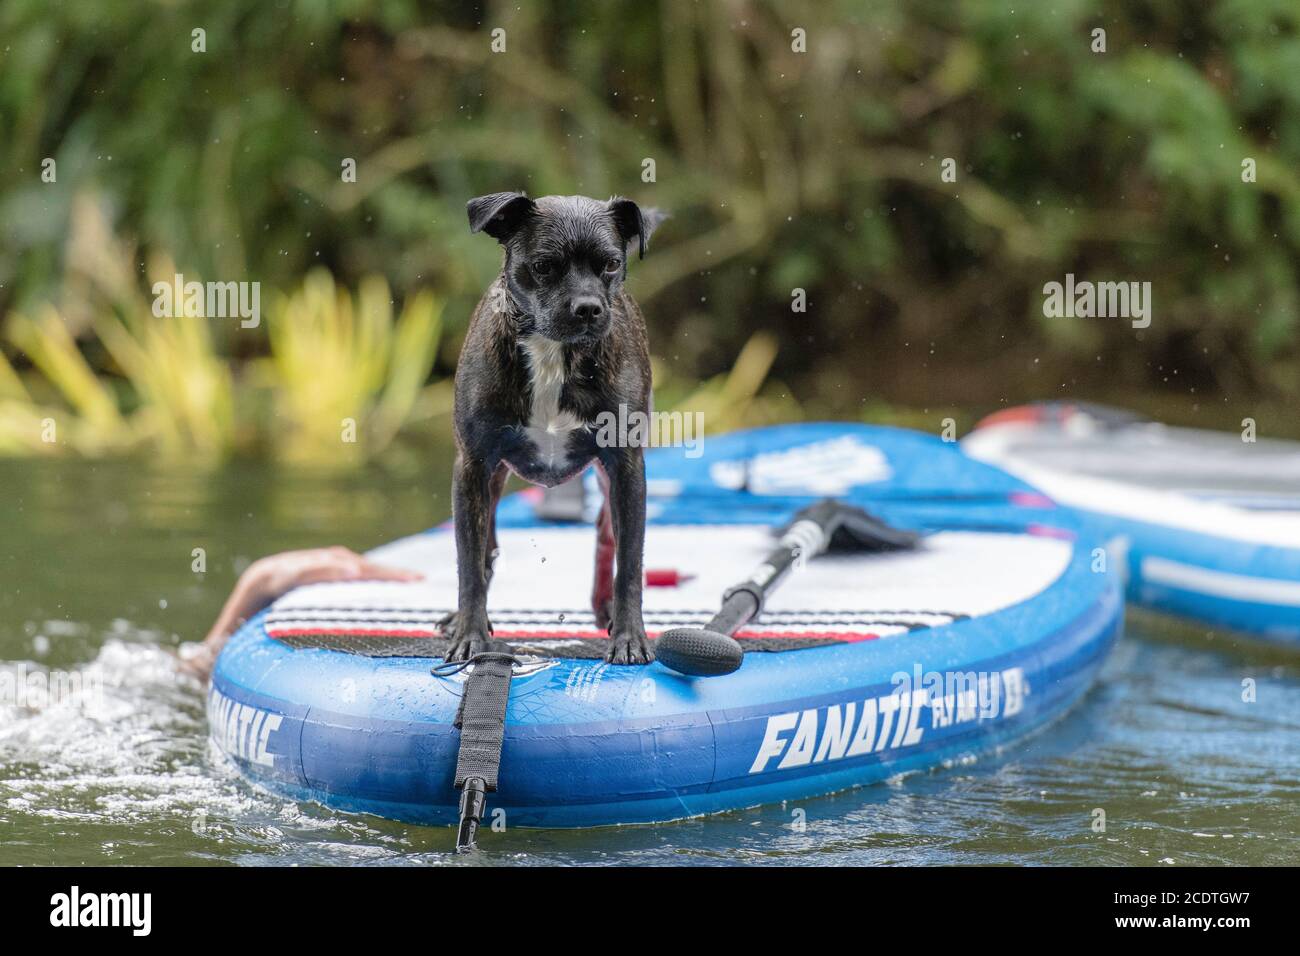 dog on paddleboard Stock Photo